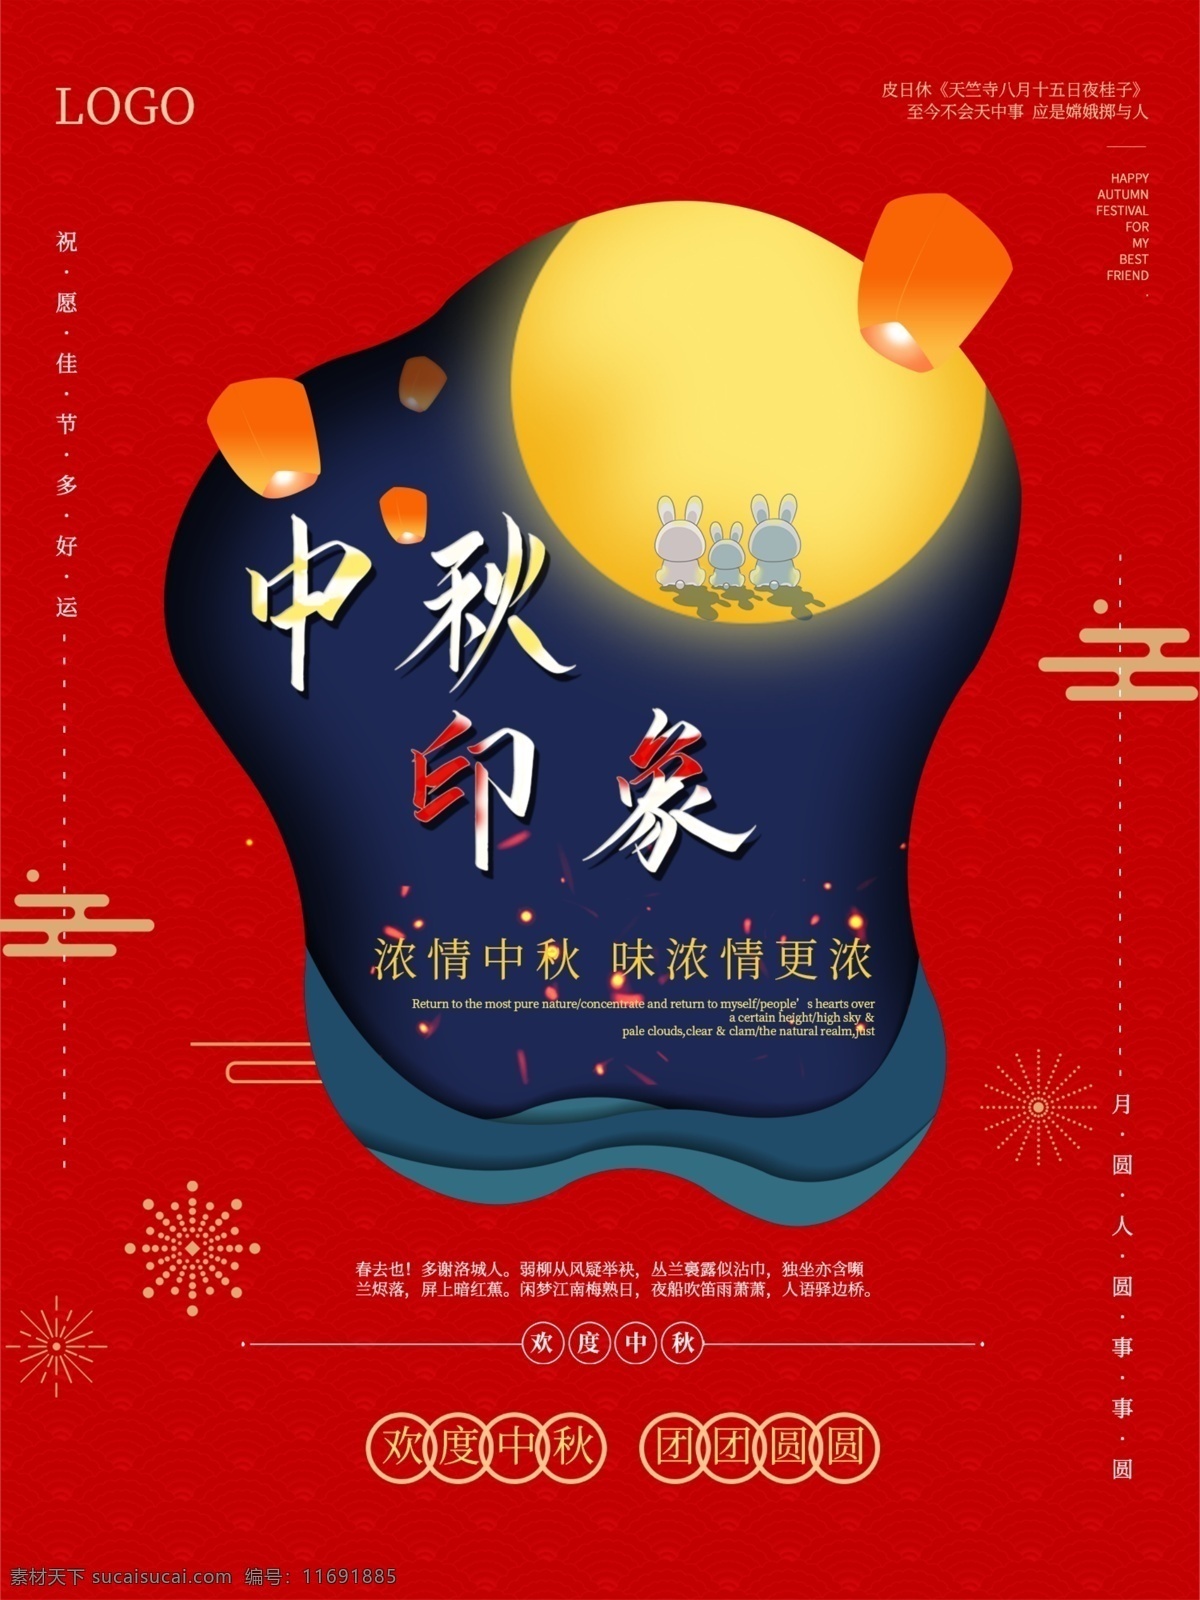 中秋节 简约 大气 宣传 创意 红色 模板 中秋 酒红色 温馨 团圆 月饼 时尚 节日海报